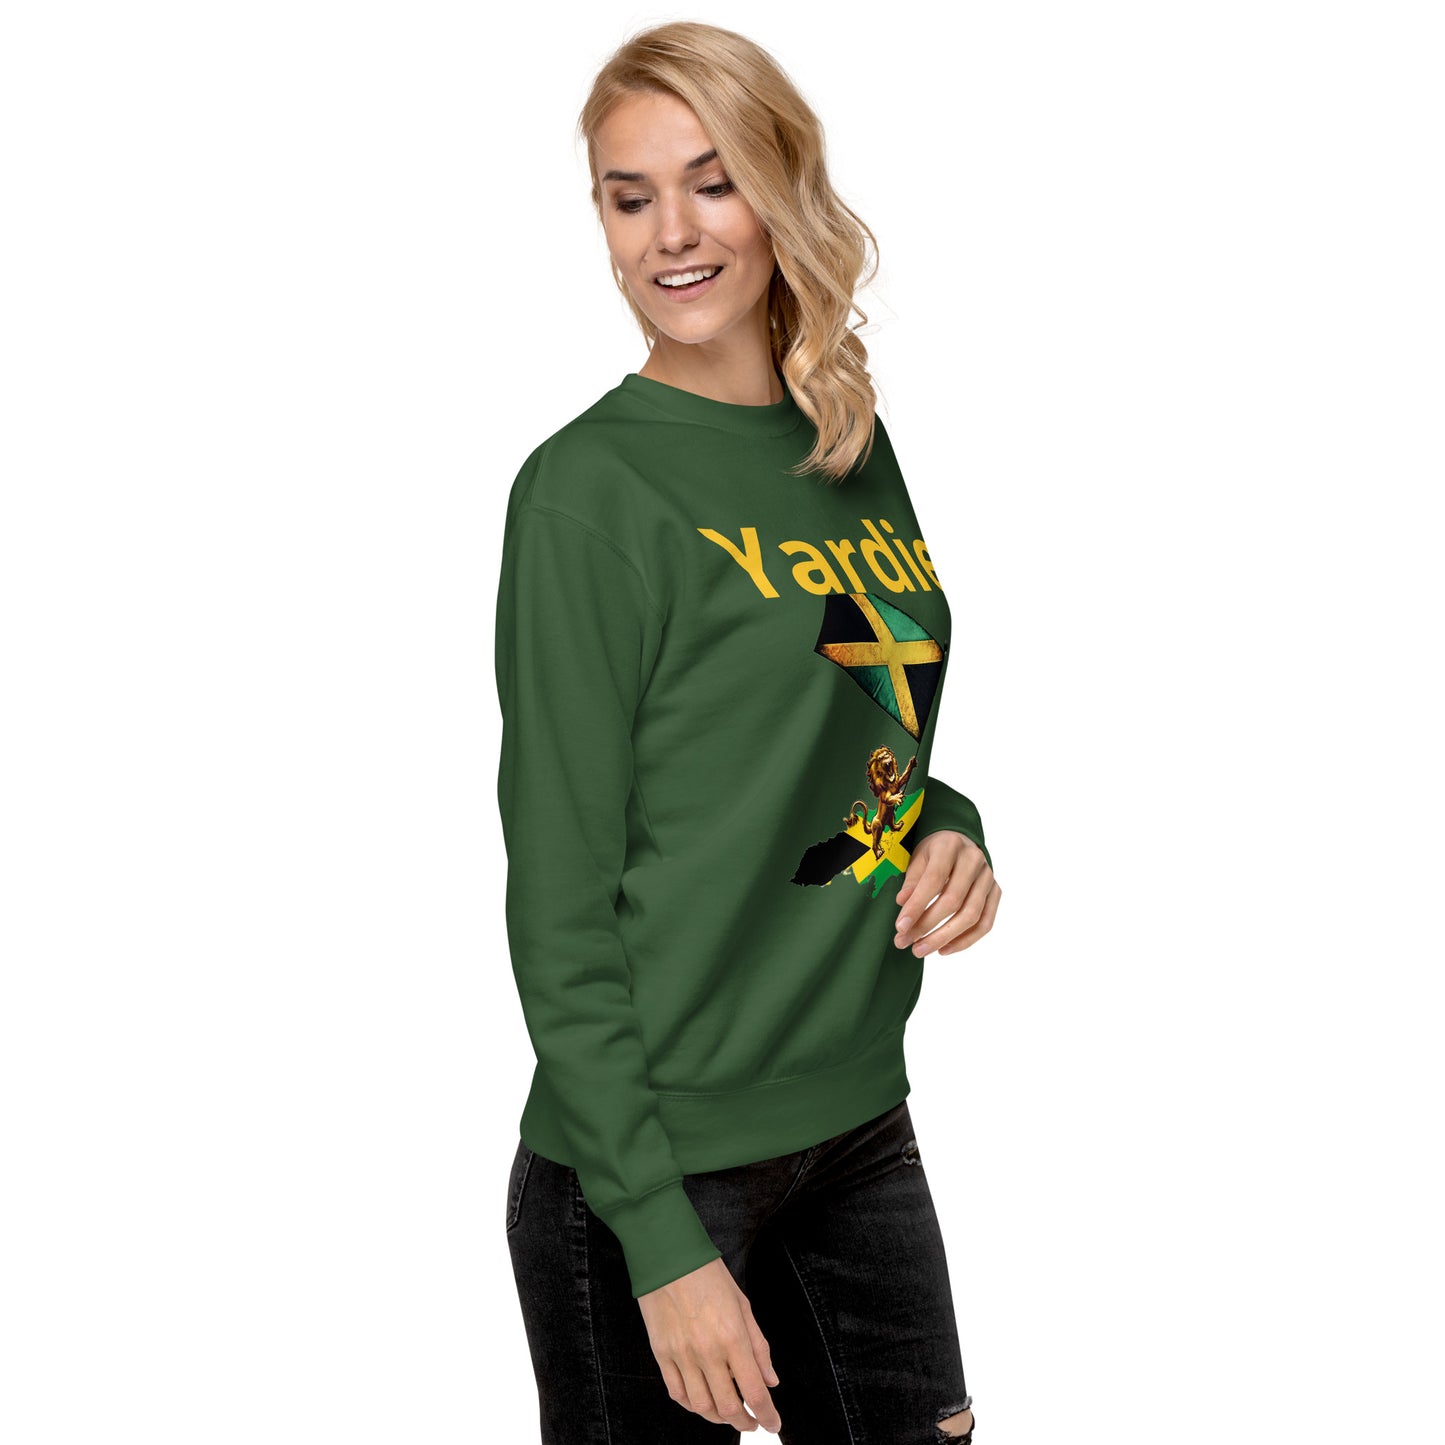 Yardie Jamaican Unisex Premium Sweatshirt